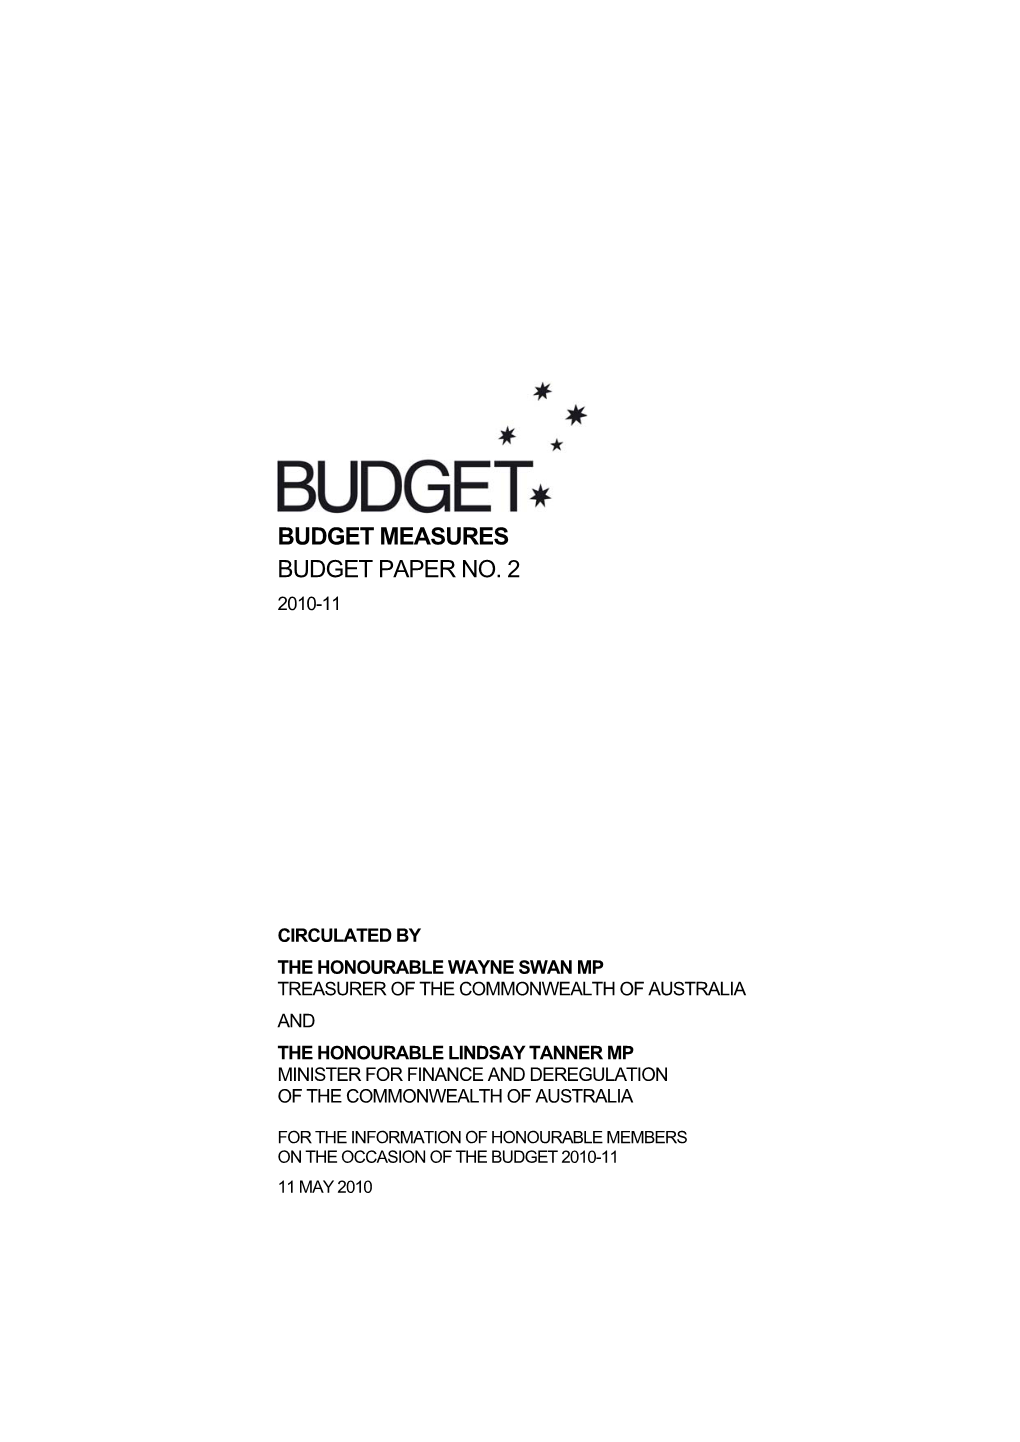 Budget Measures Budget Paper No